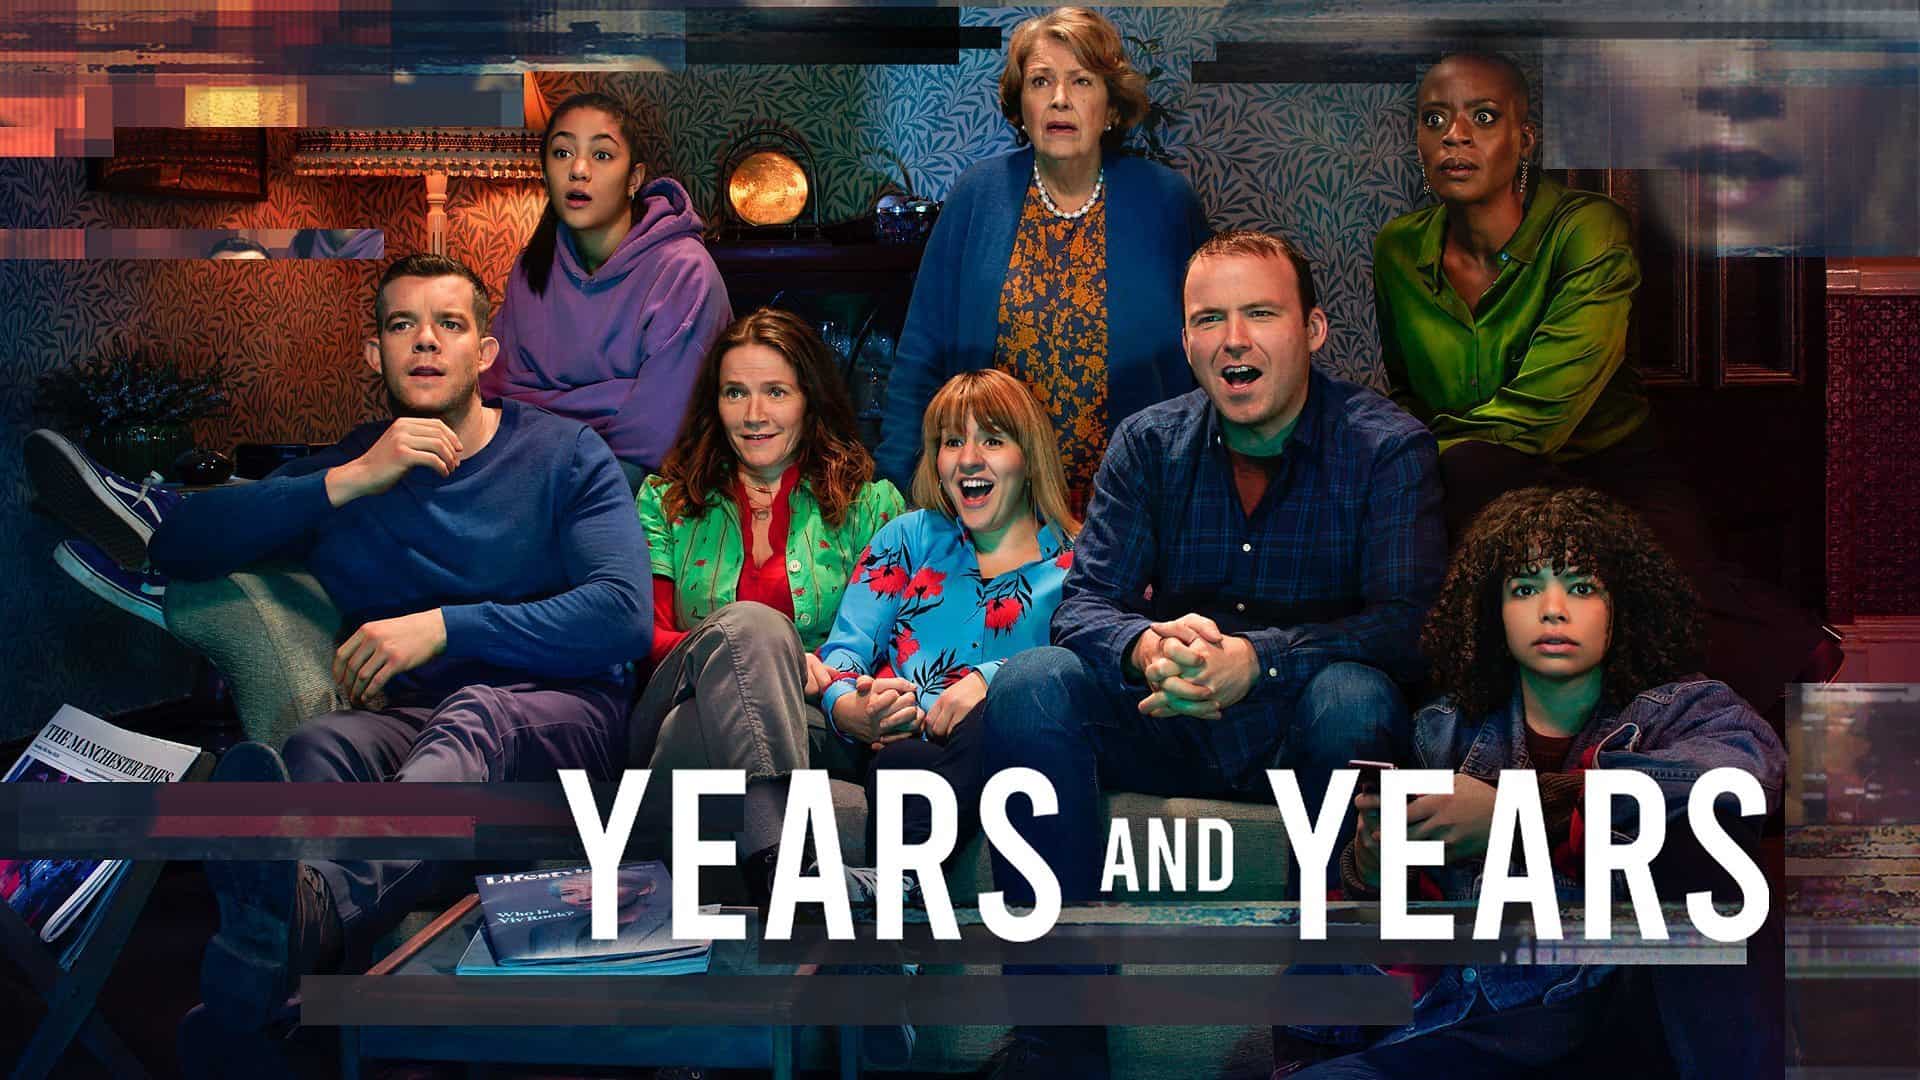 Imagen promocional de la serie 'Years and Years'.